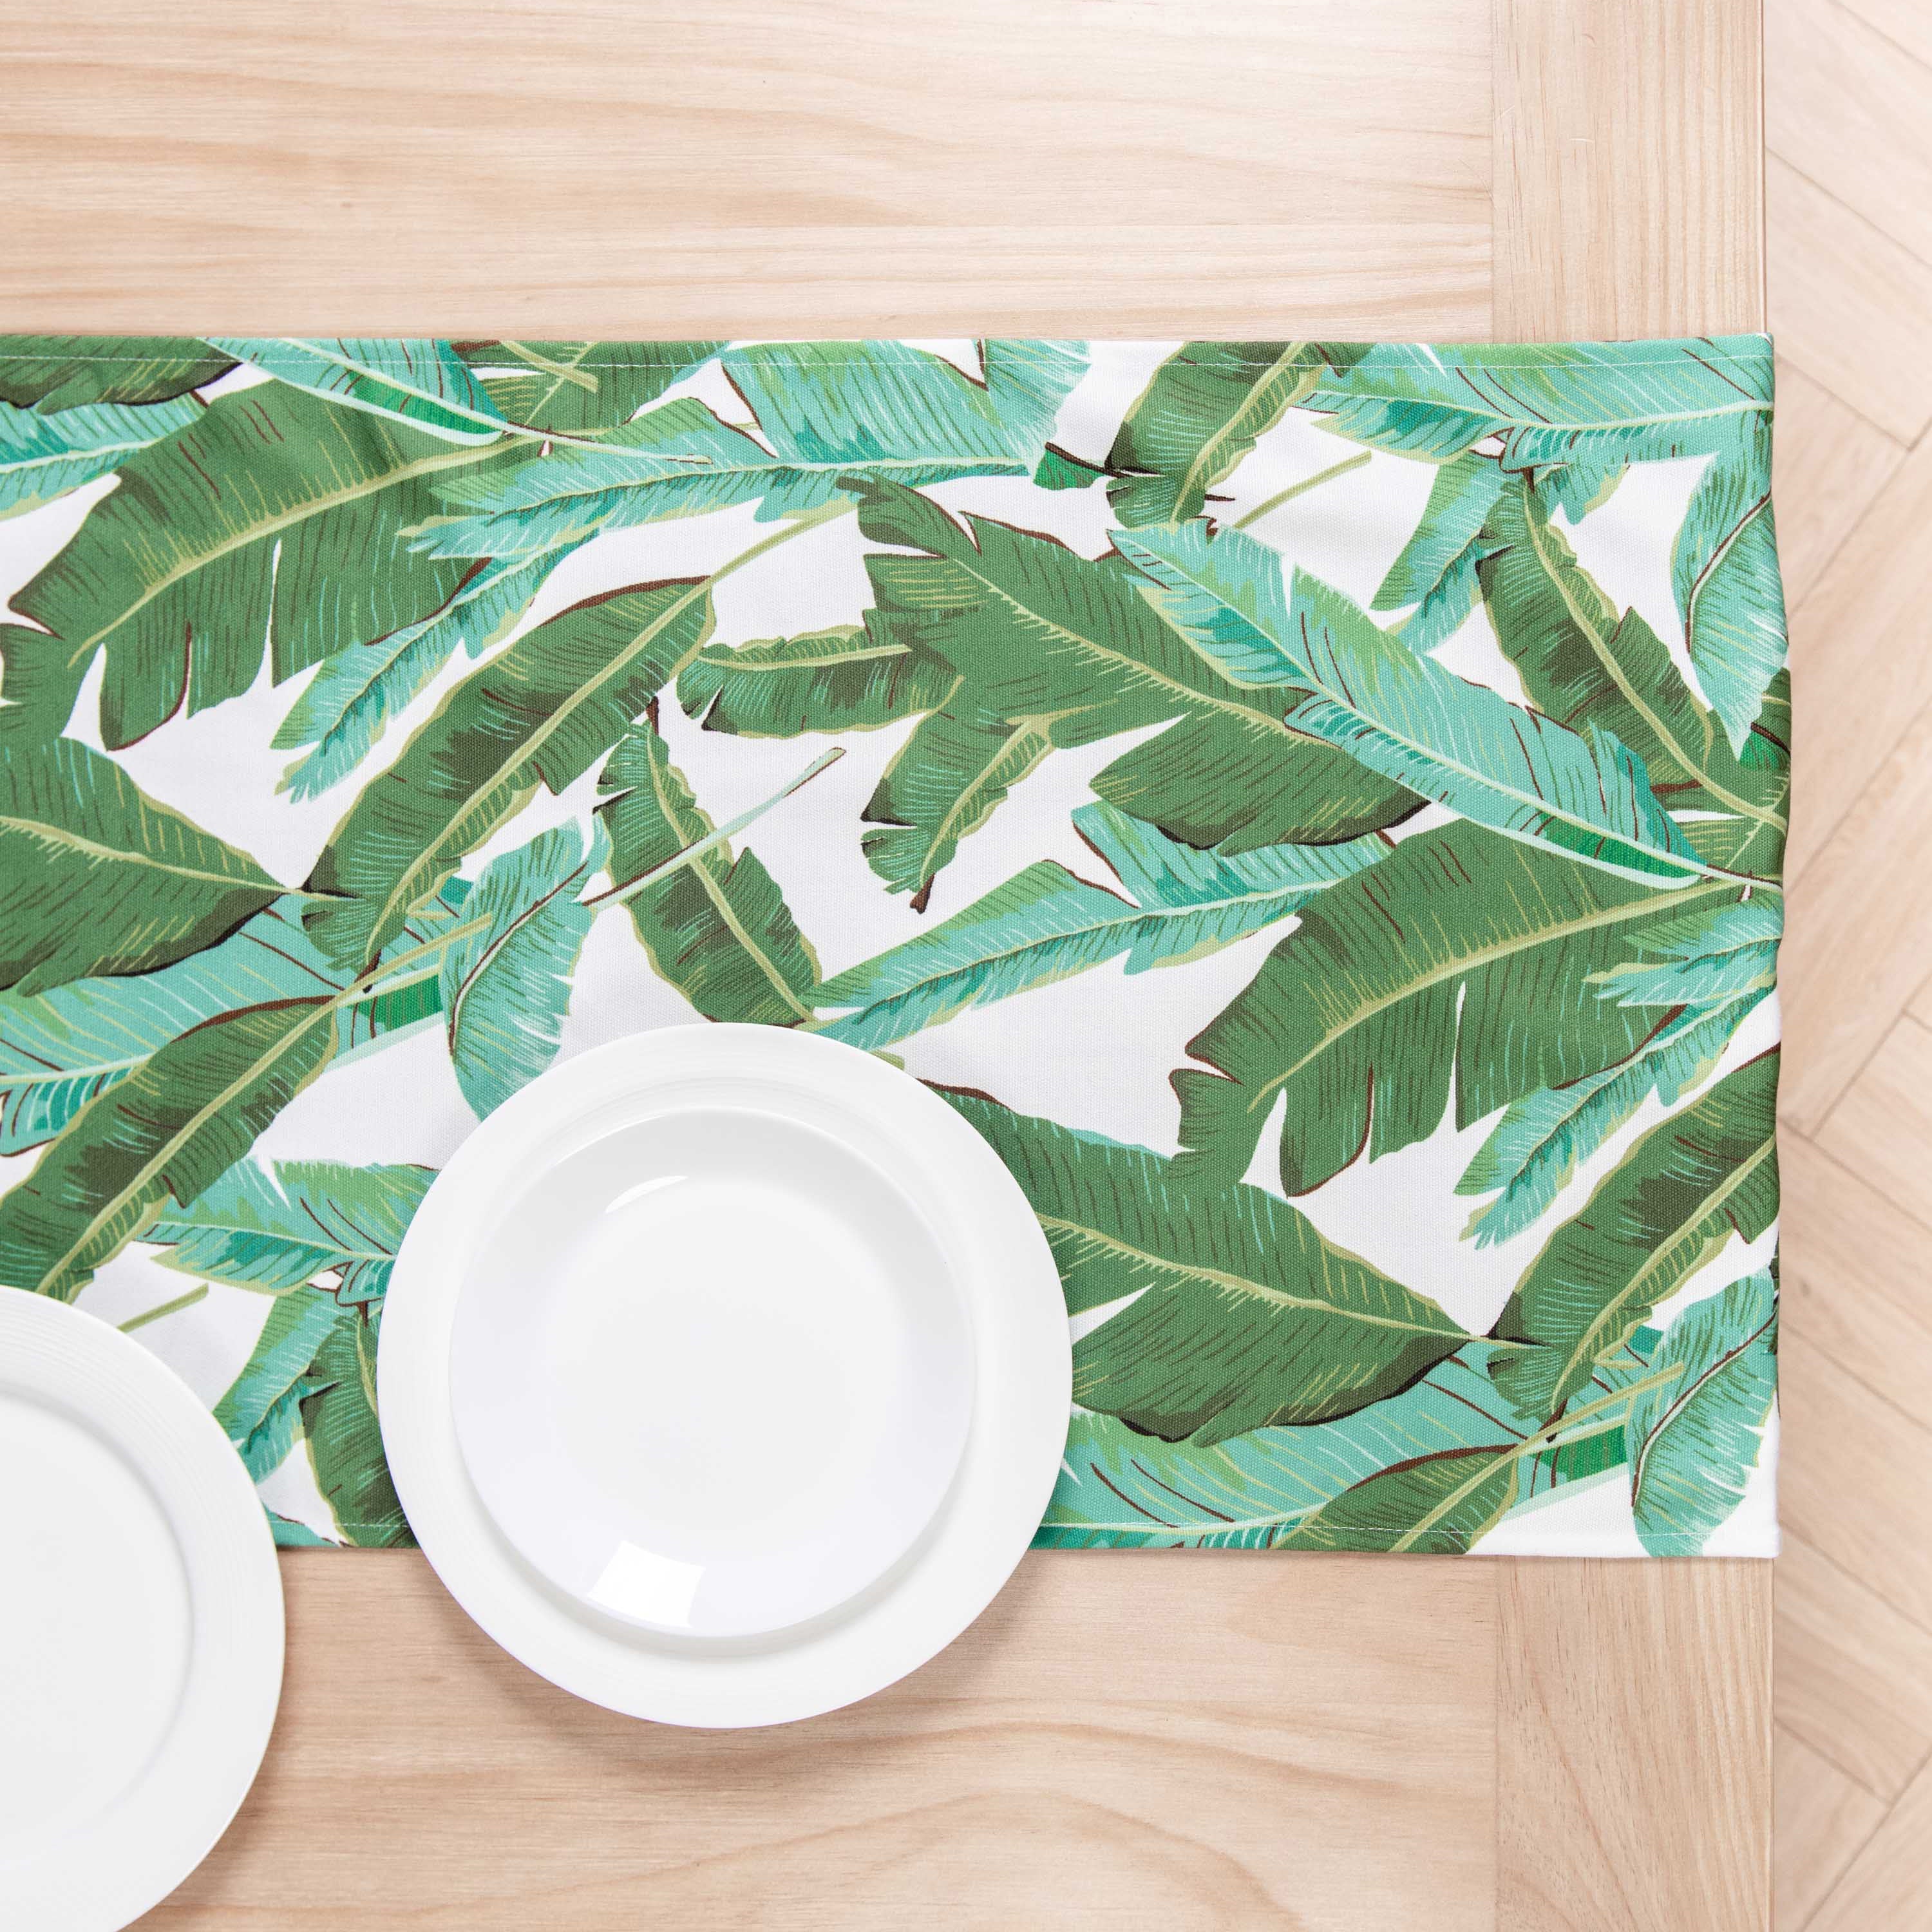 Tropical Table Runner, Banana Leaves, Green, 18"x108"